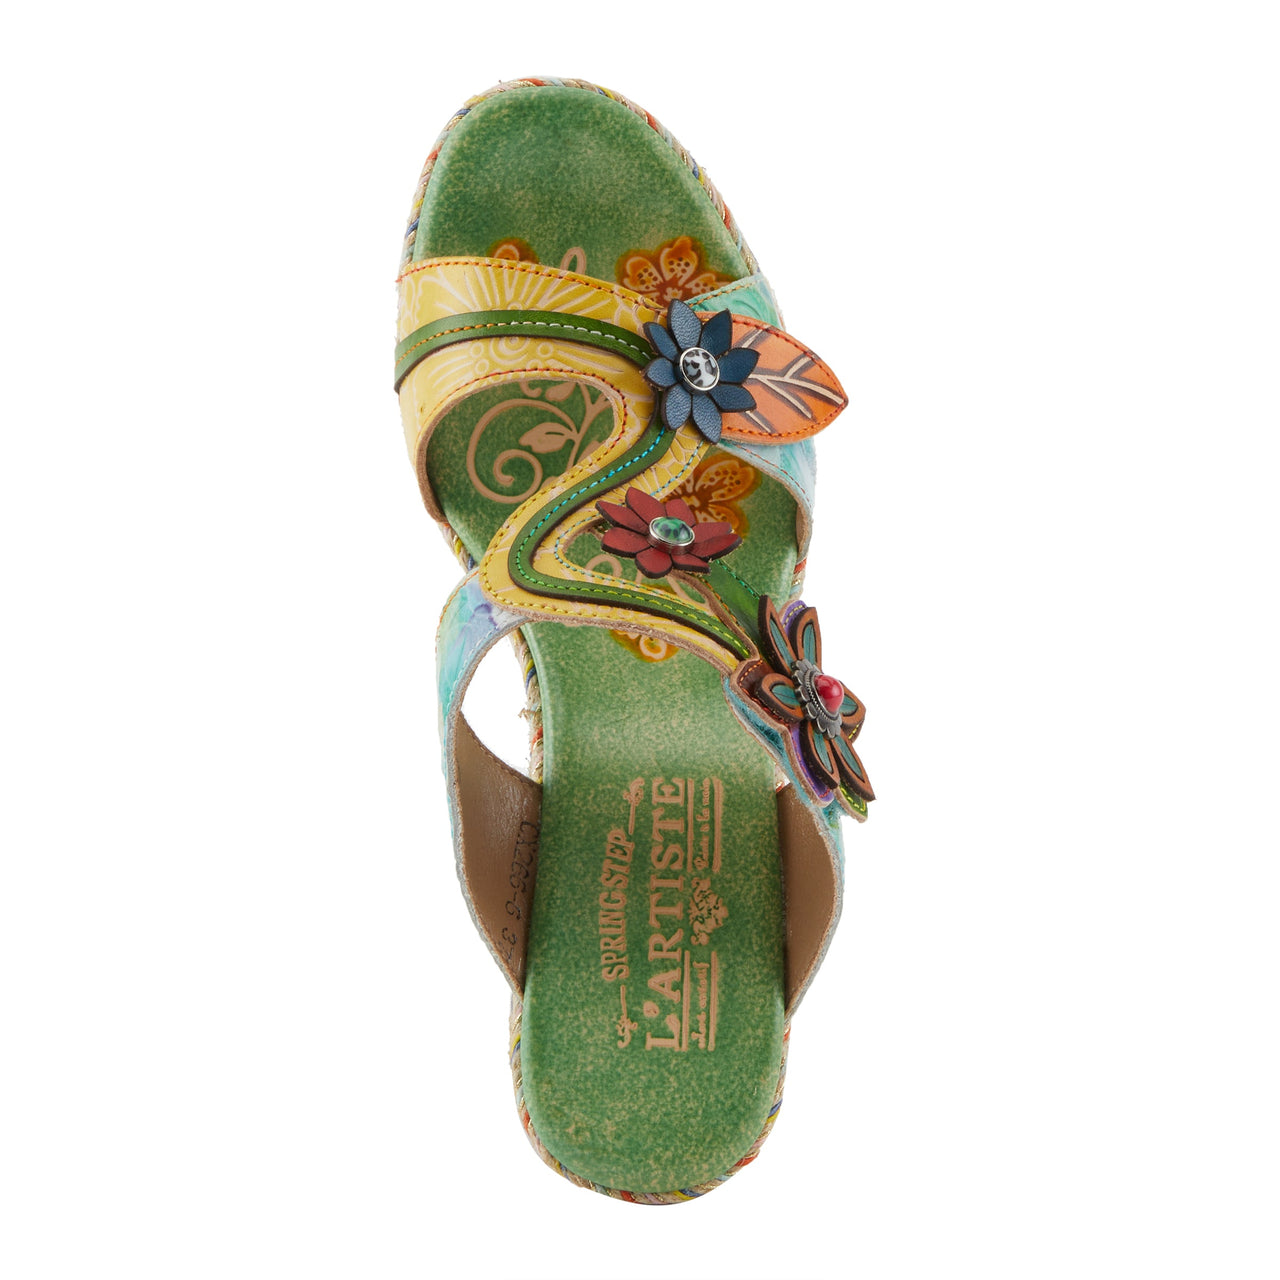 Spring Step Shoes L'Artiste Dreamt Sandals